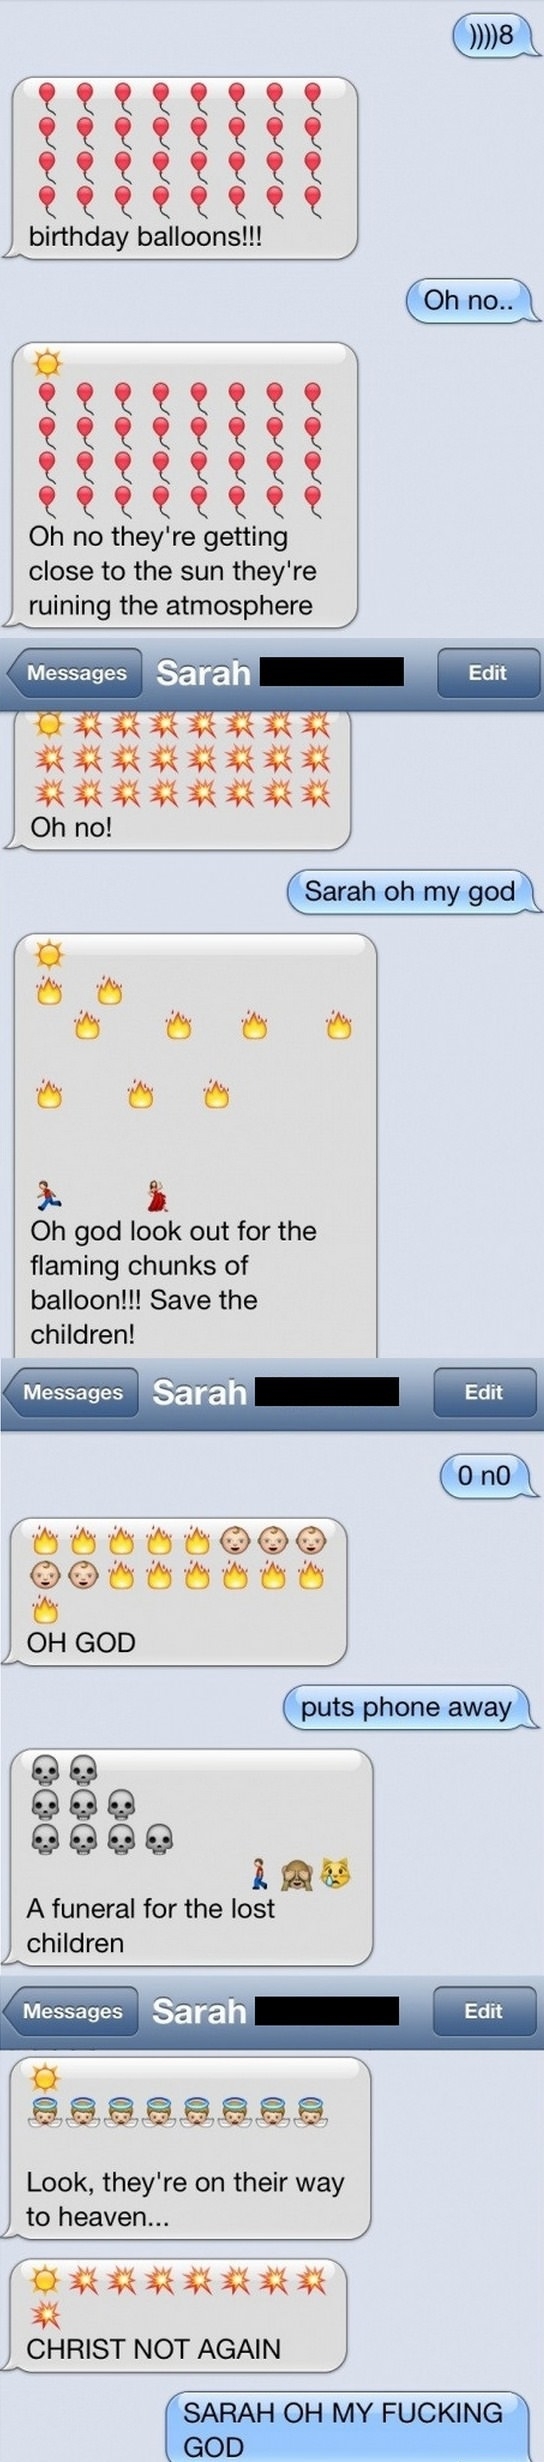 Sarah oh my god!